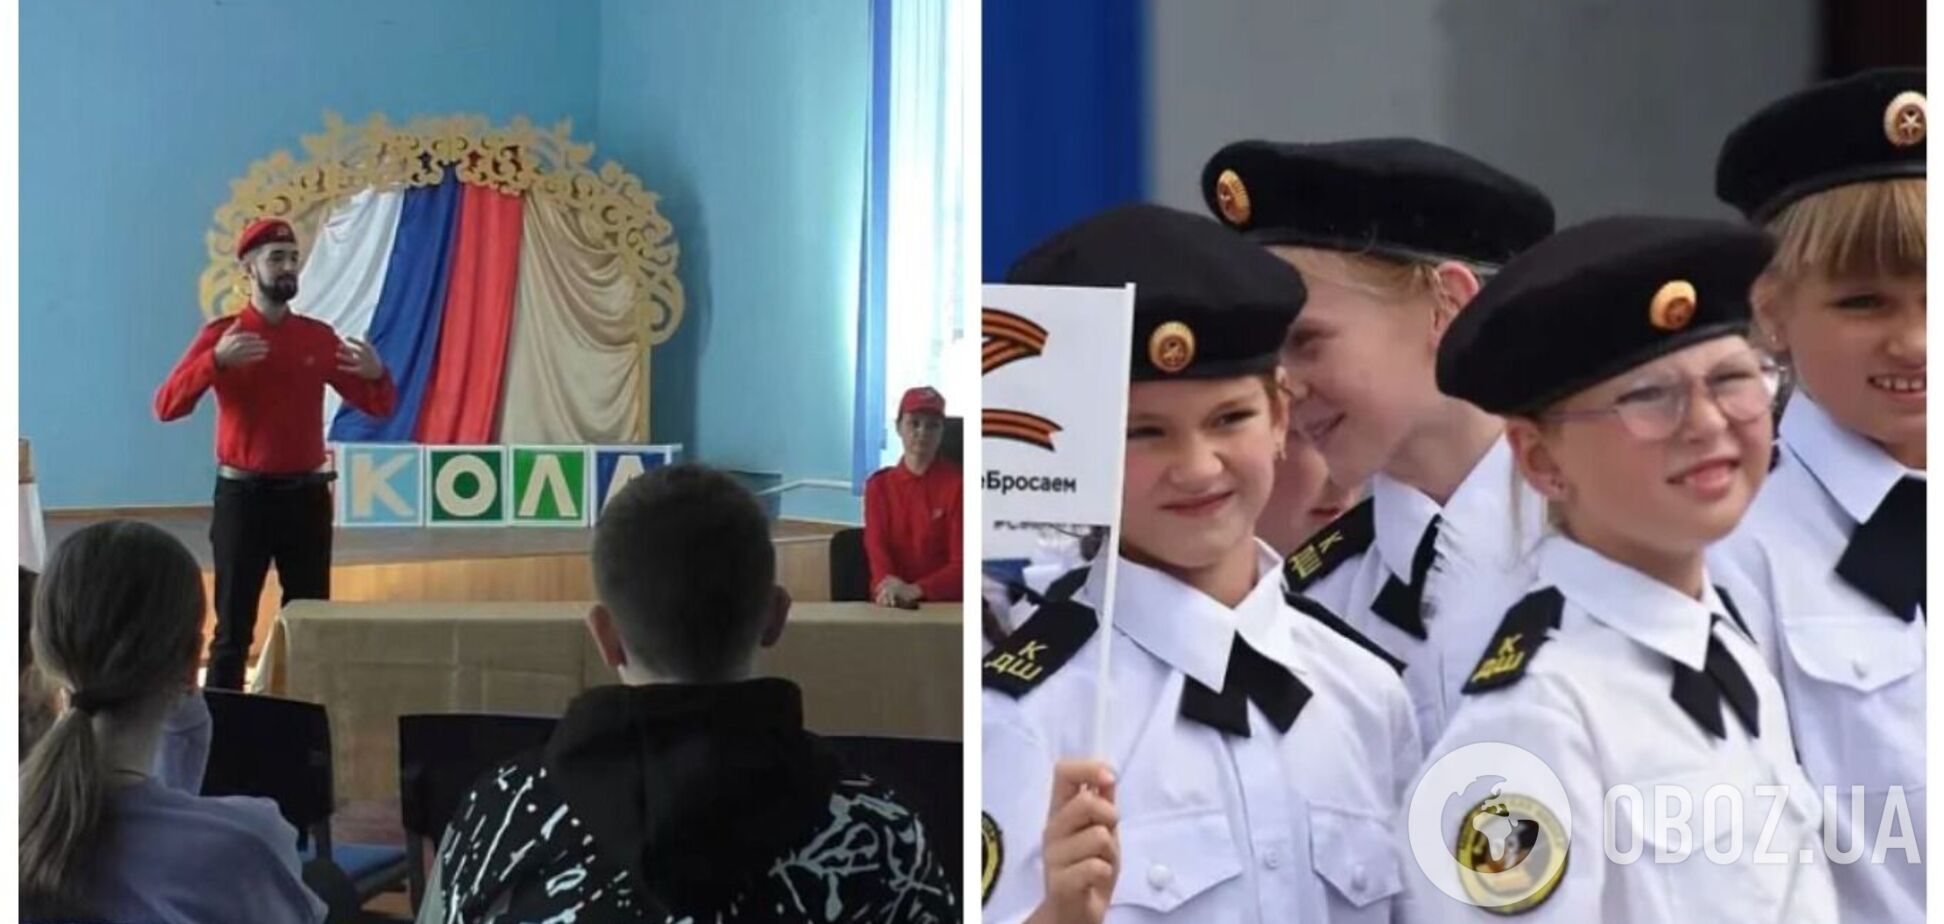 Кремль намагається залучити українських дітей до 'Юнармії', щоб використати їх у війні, – експерти